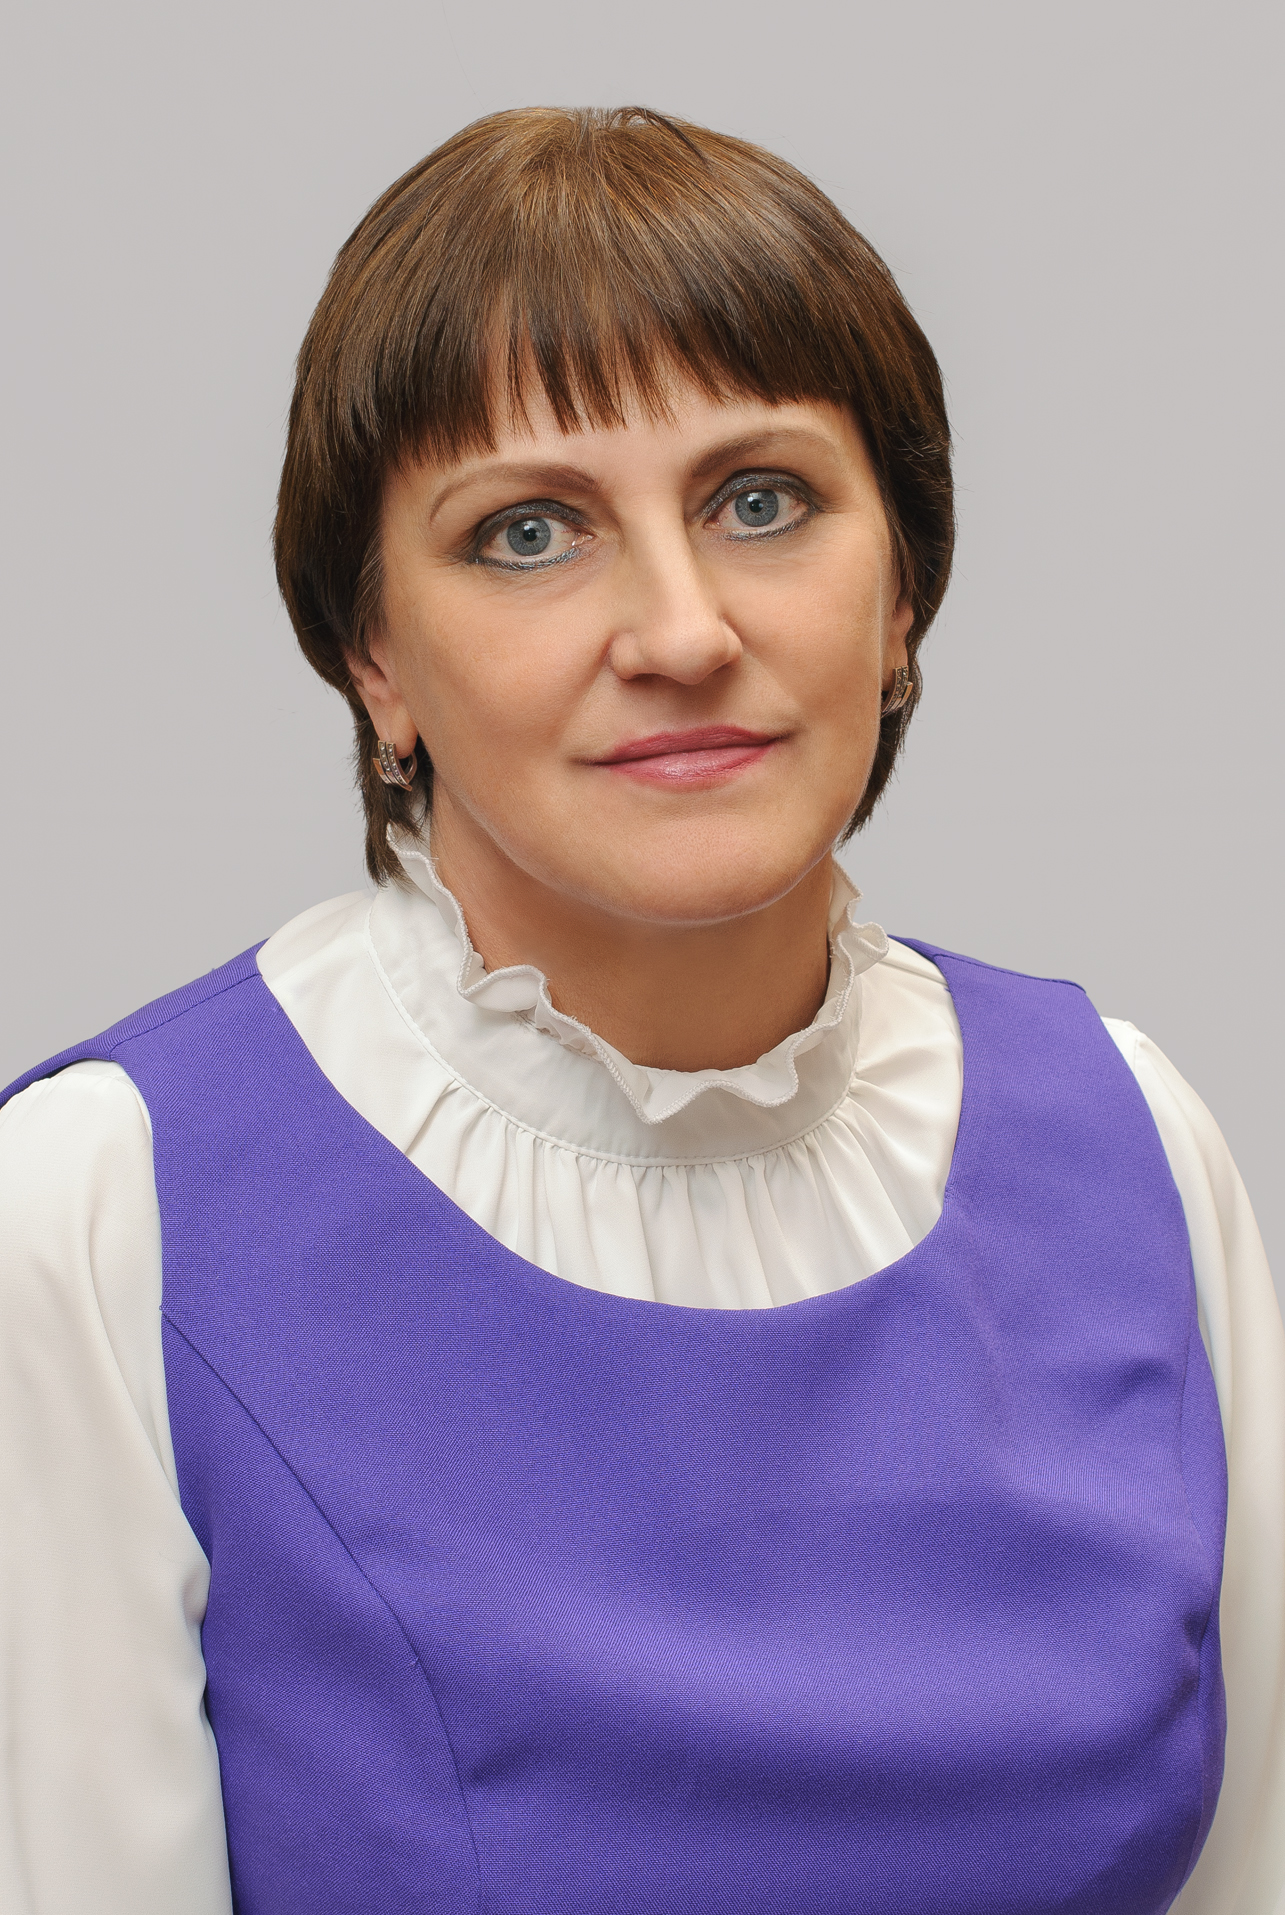 Птицина Елена  Михайловна.